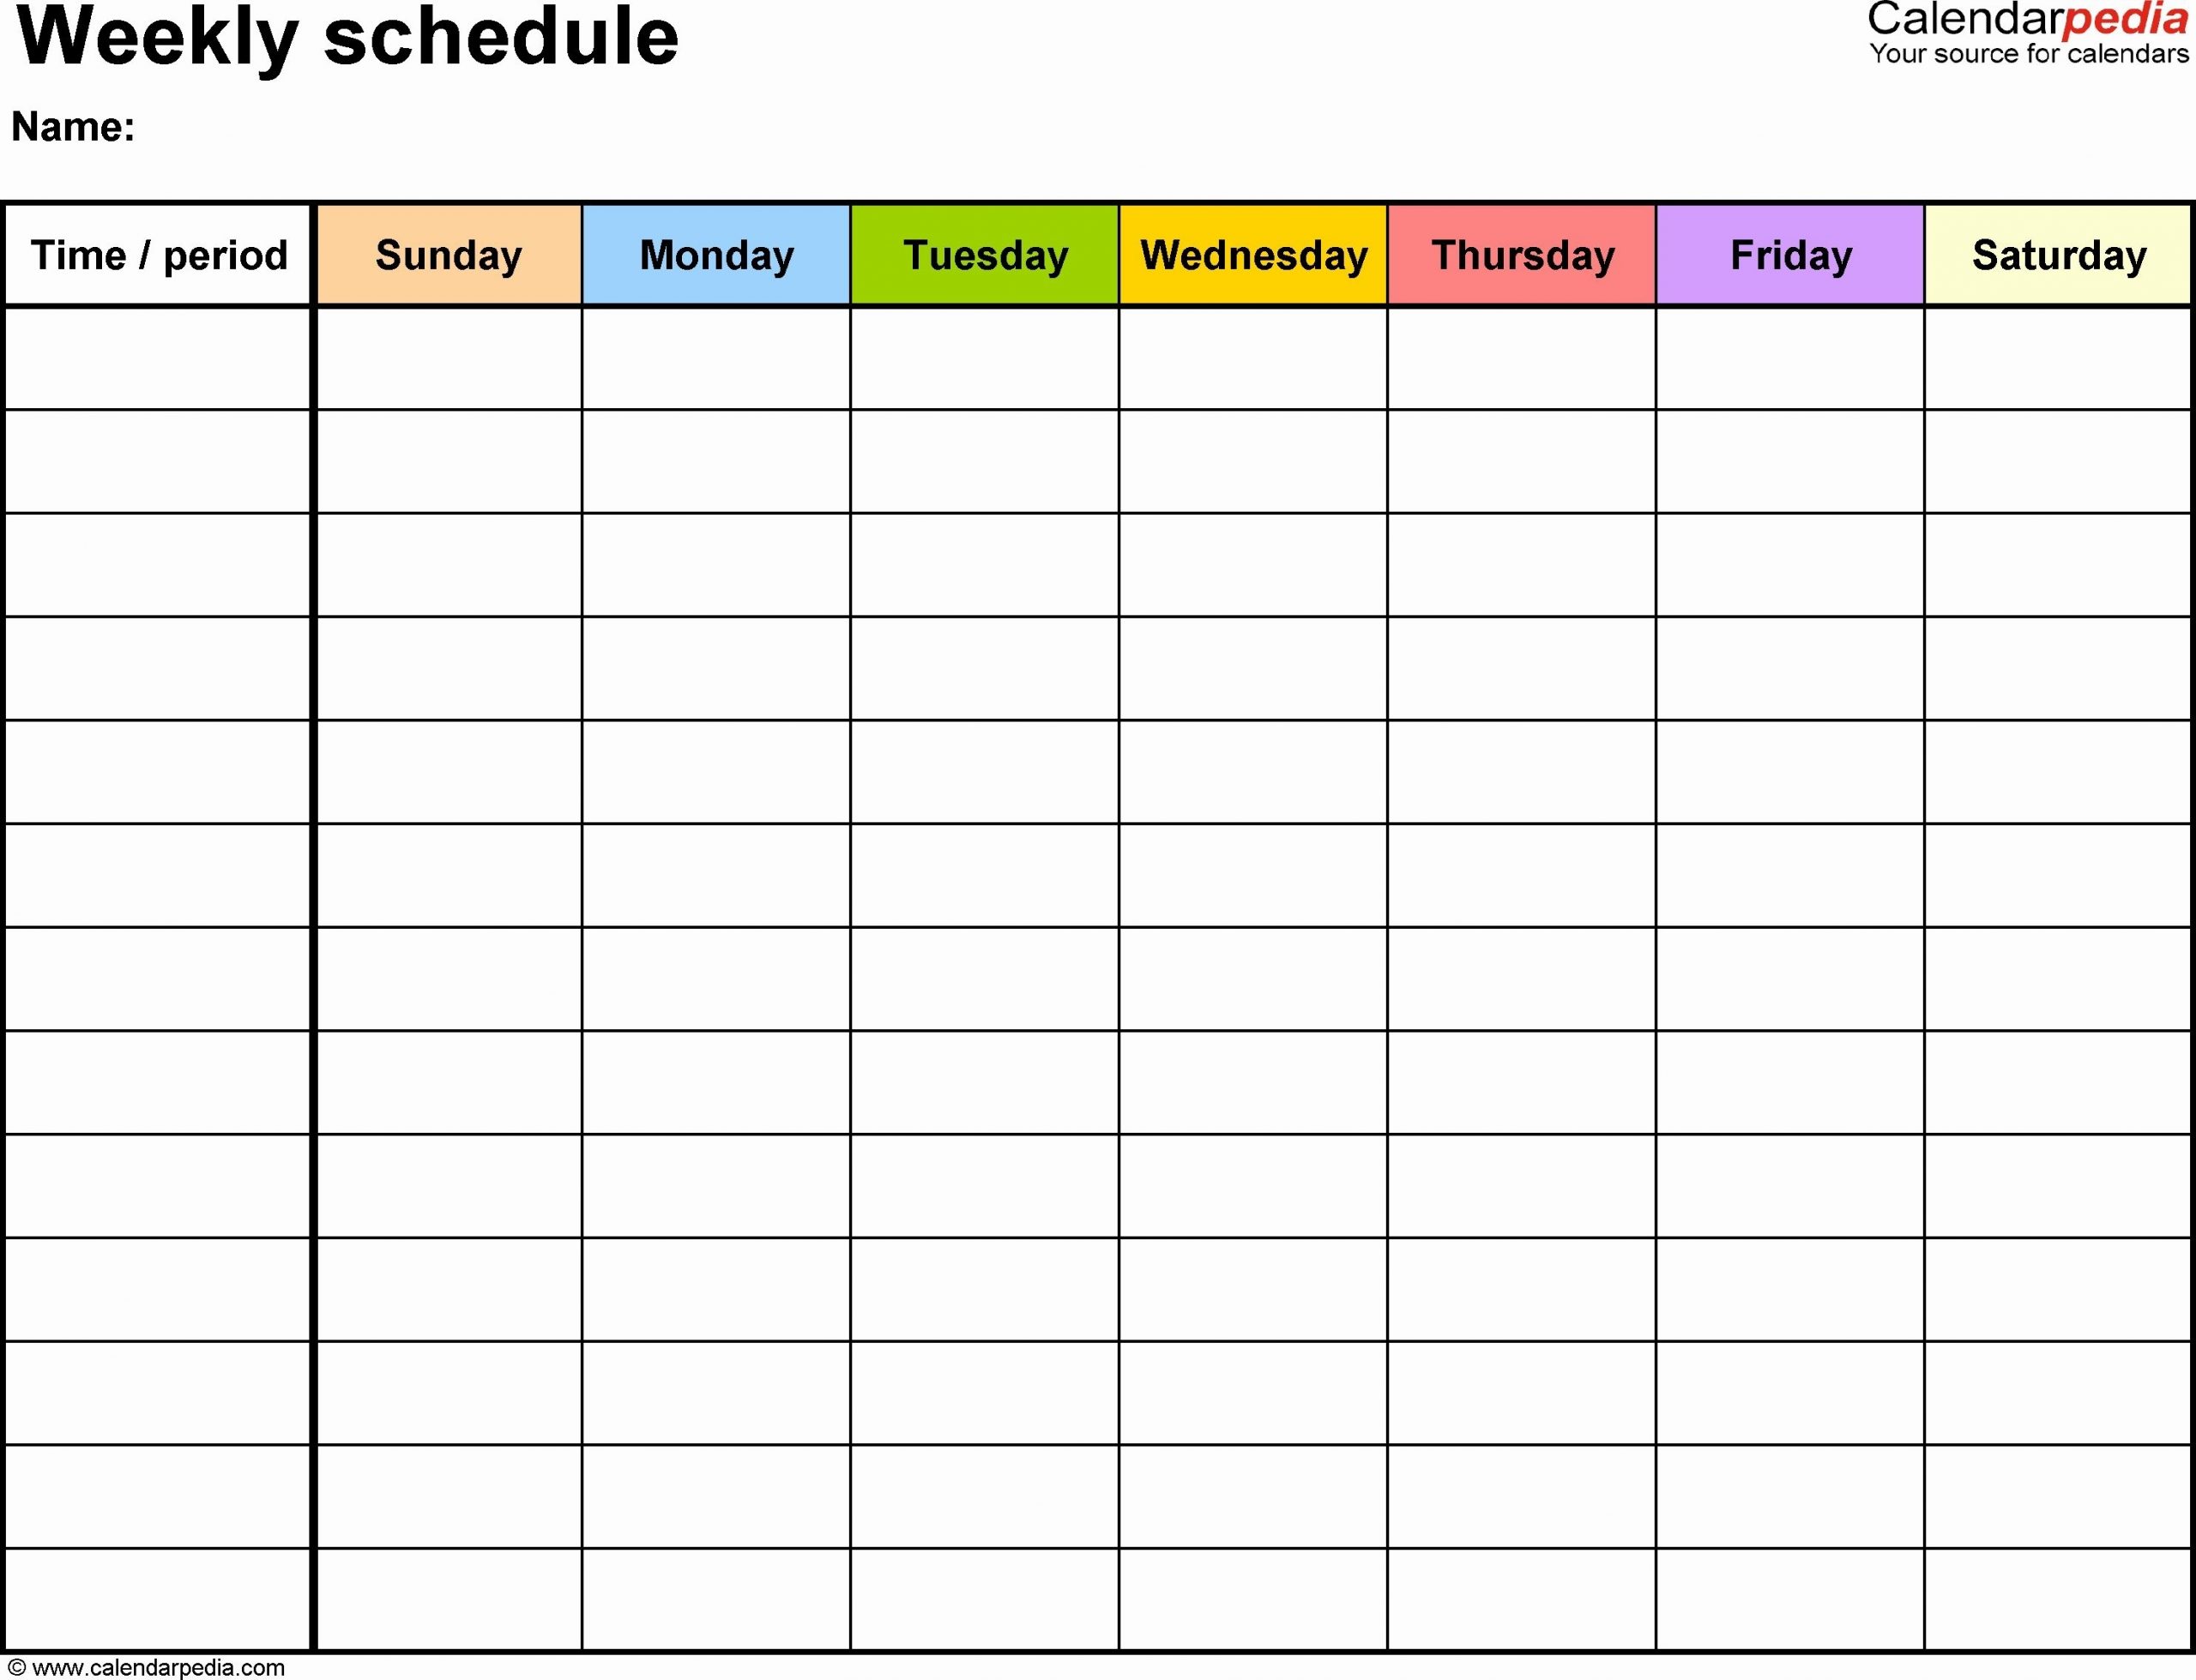 30 Day Calendar Template Word Elegant Weekly Schedule